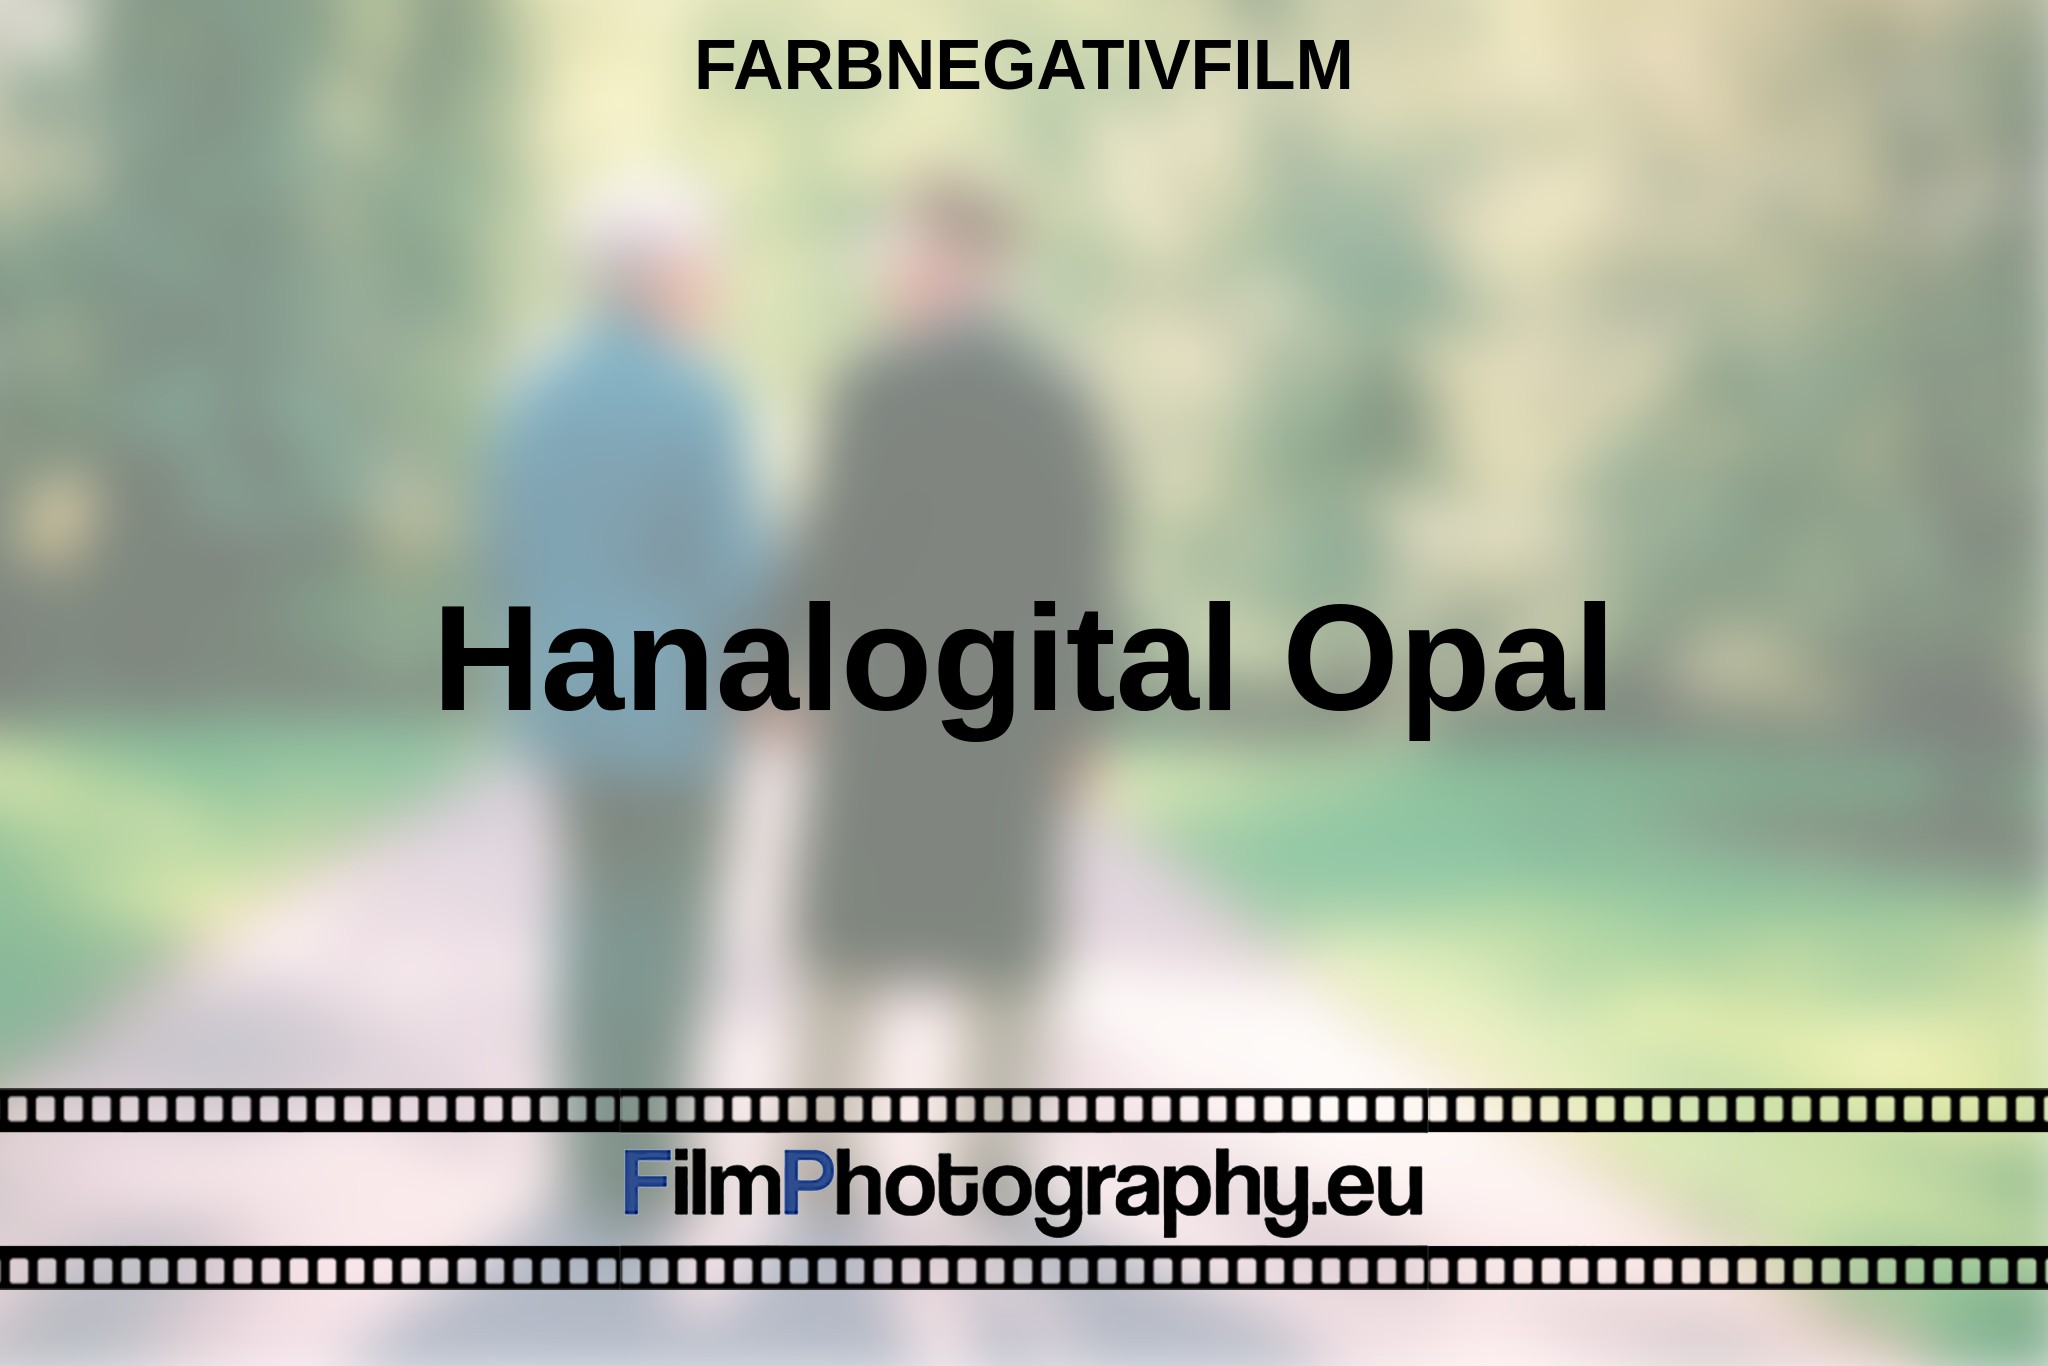 hanalogital-opal-farbnegativfilm-bnv.jpg